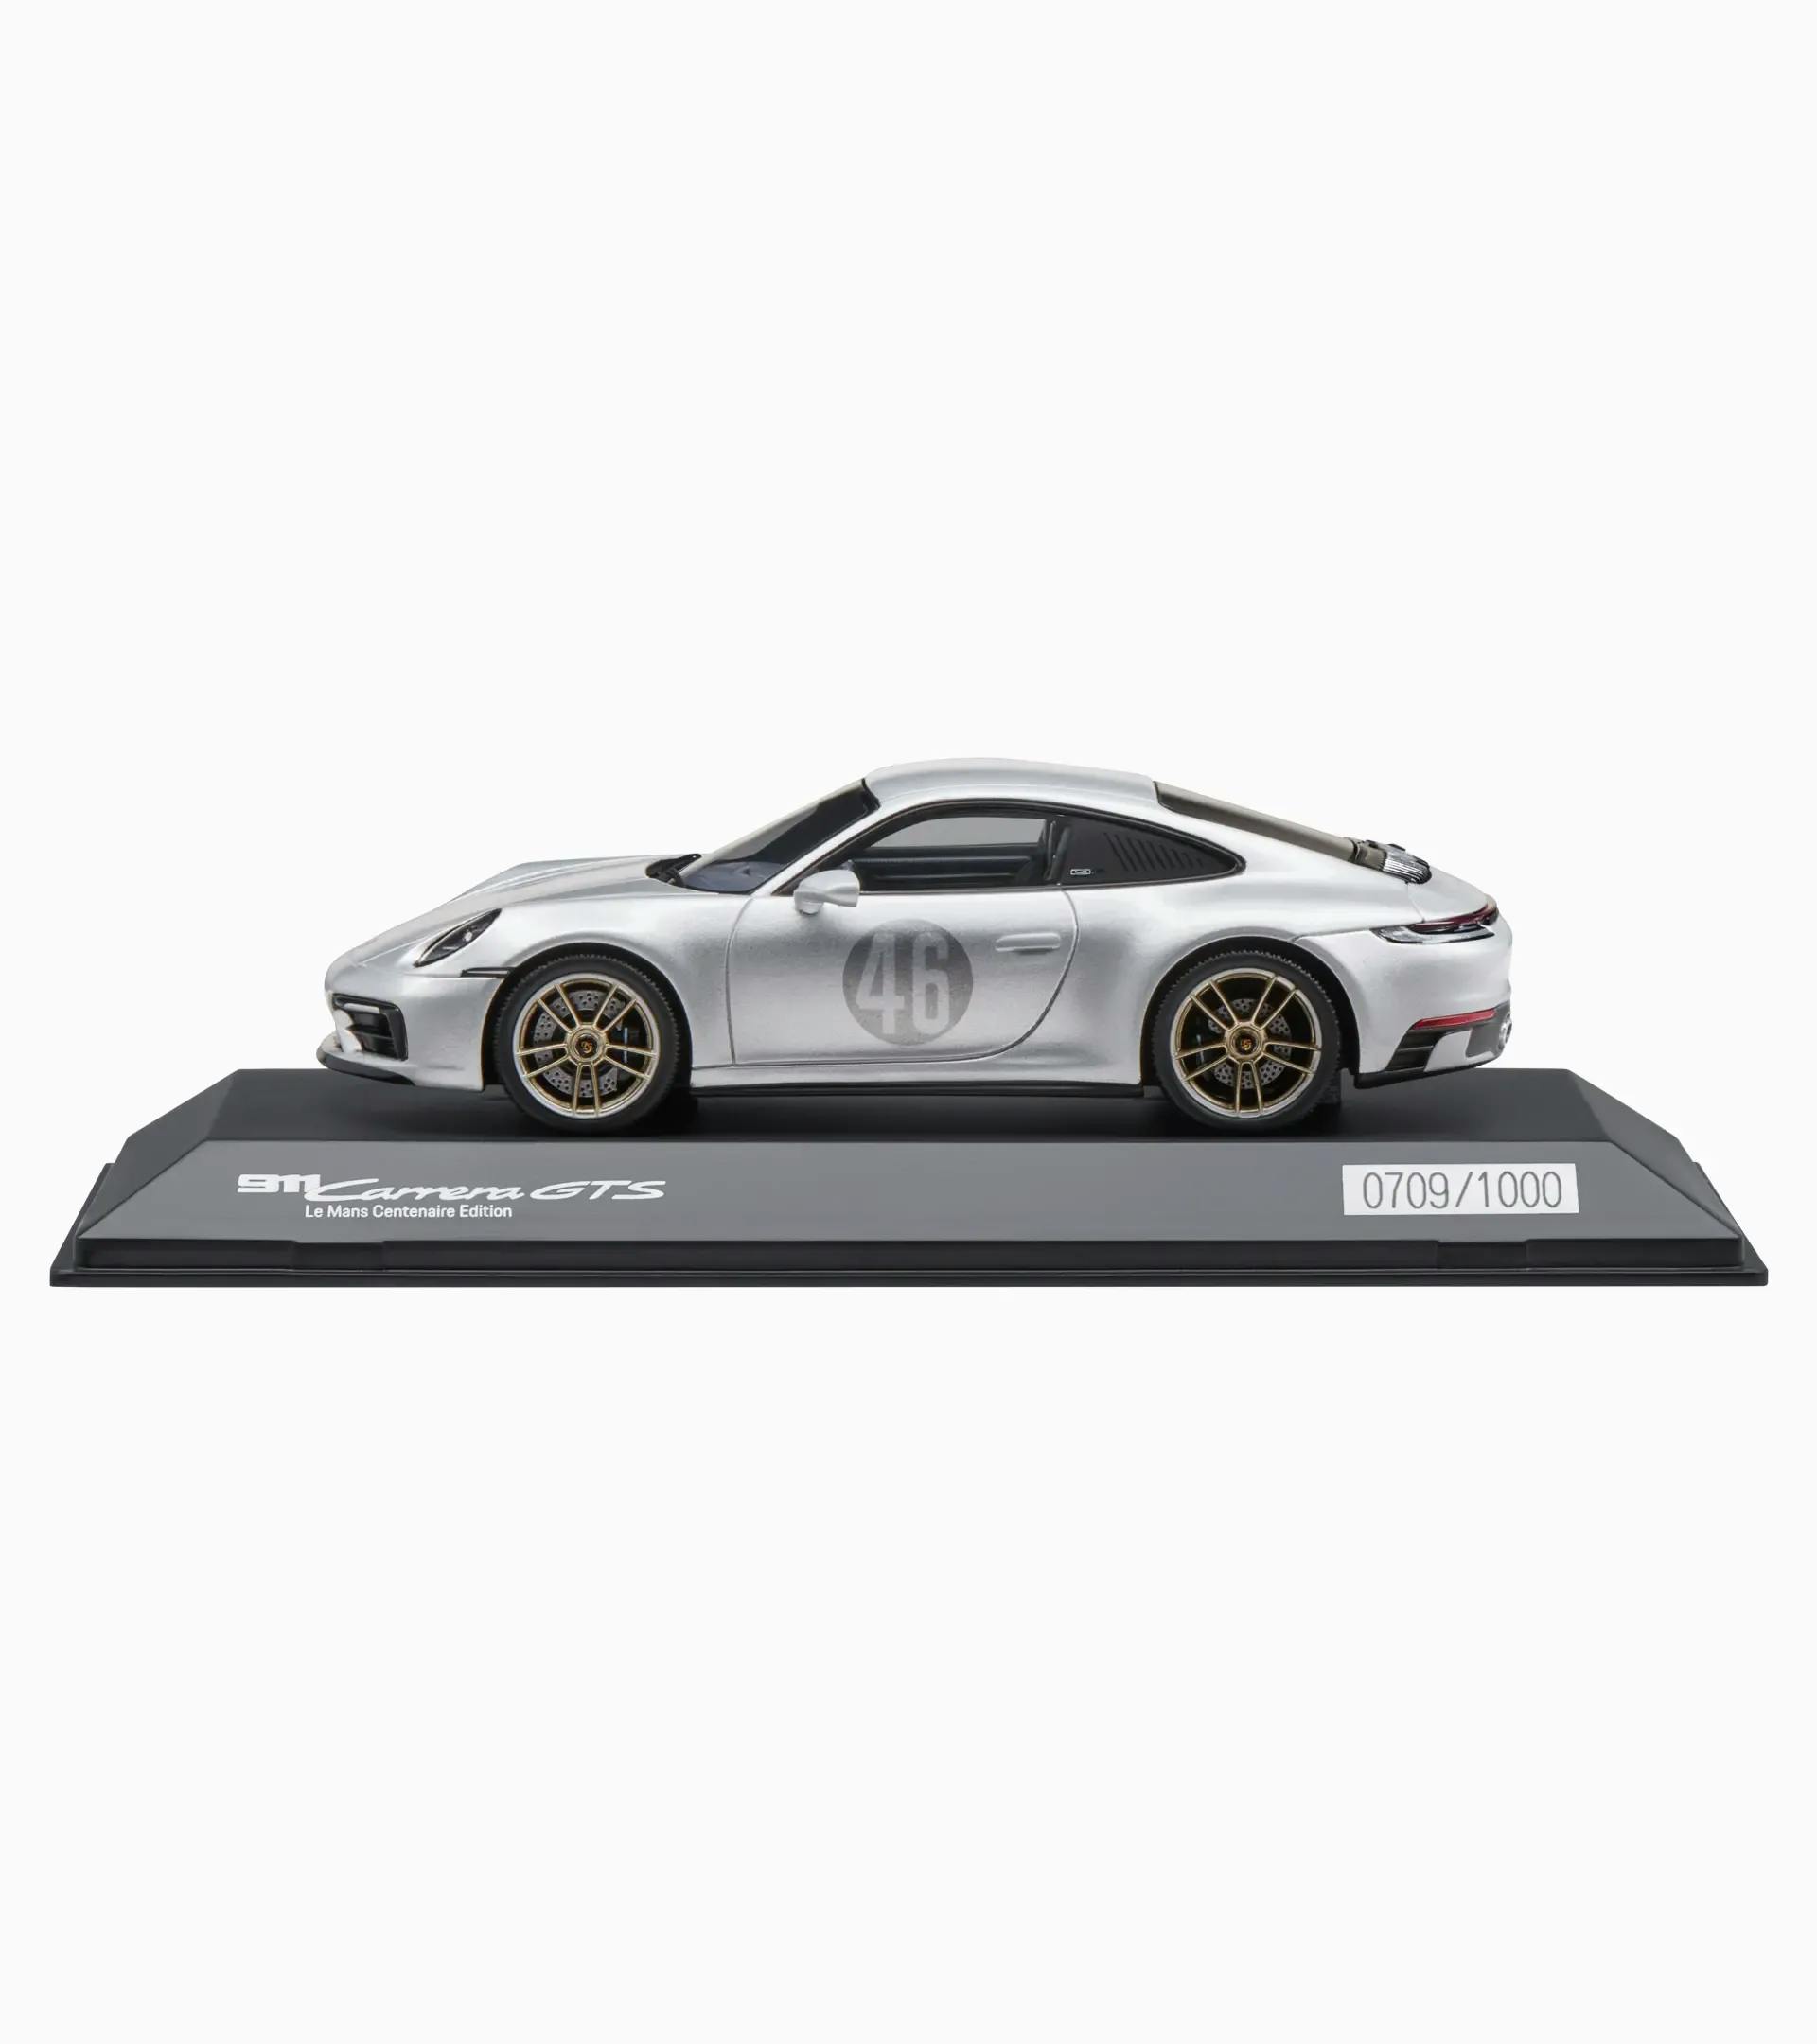 Porsche 911 Carrera GTS Le Mans Centenaire Edition (992) – Ltd. 2